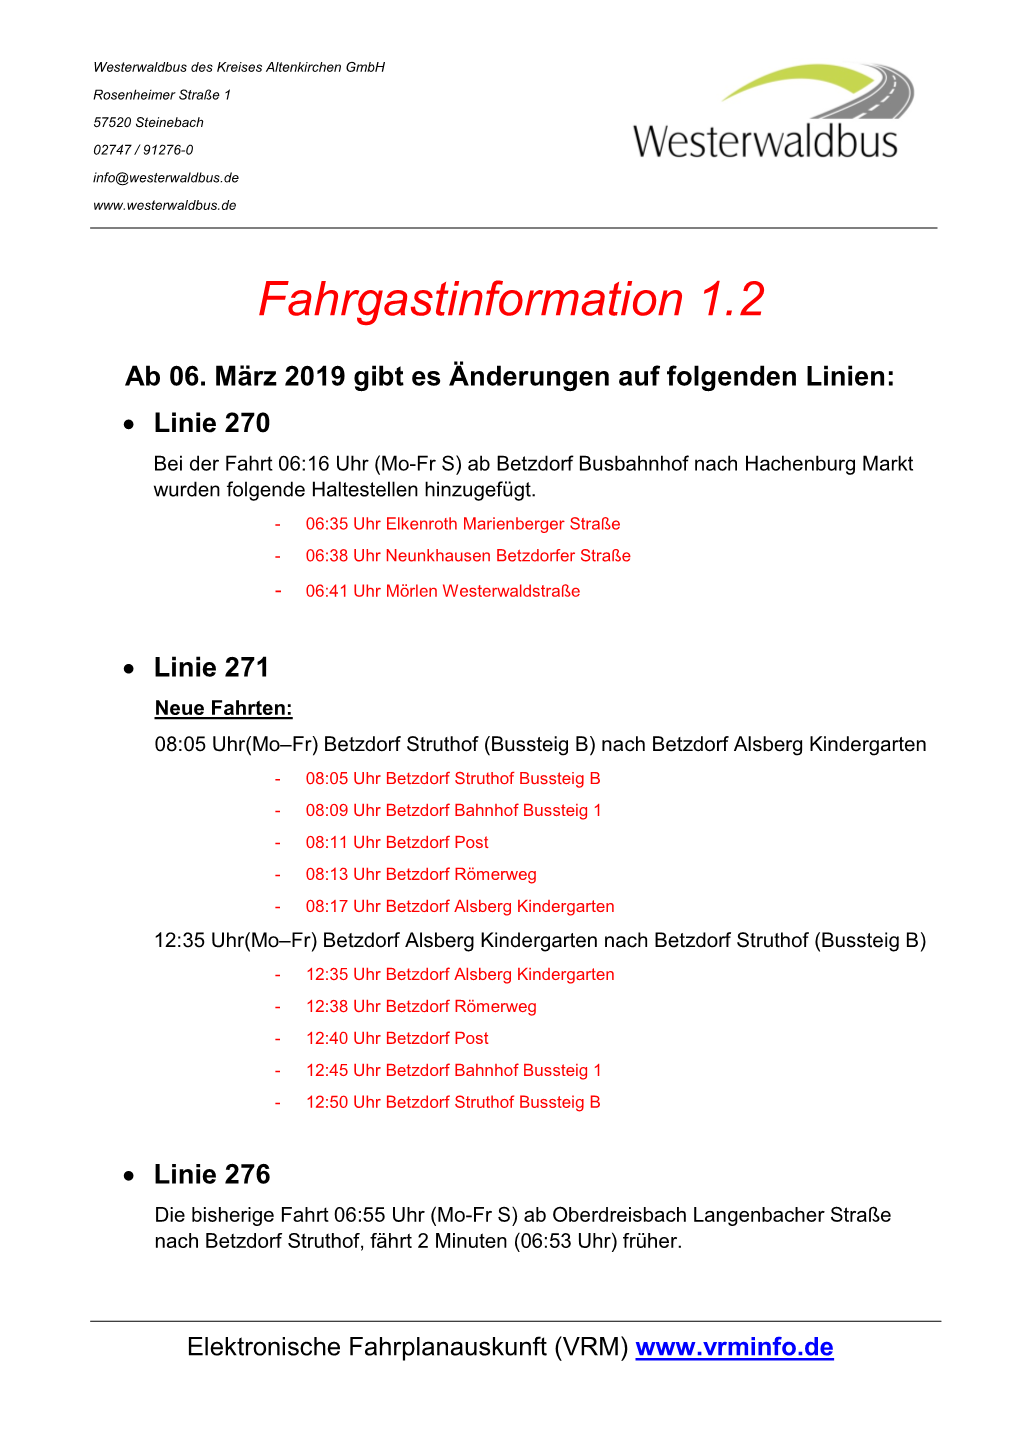 Fahrgastinformation 1.2